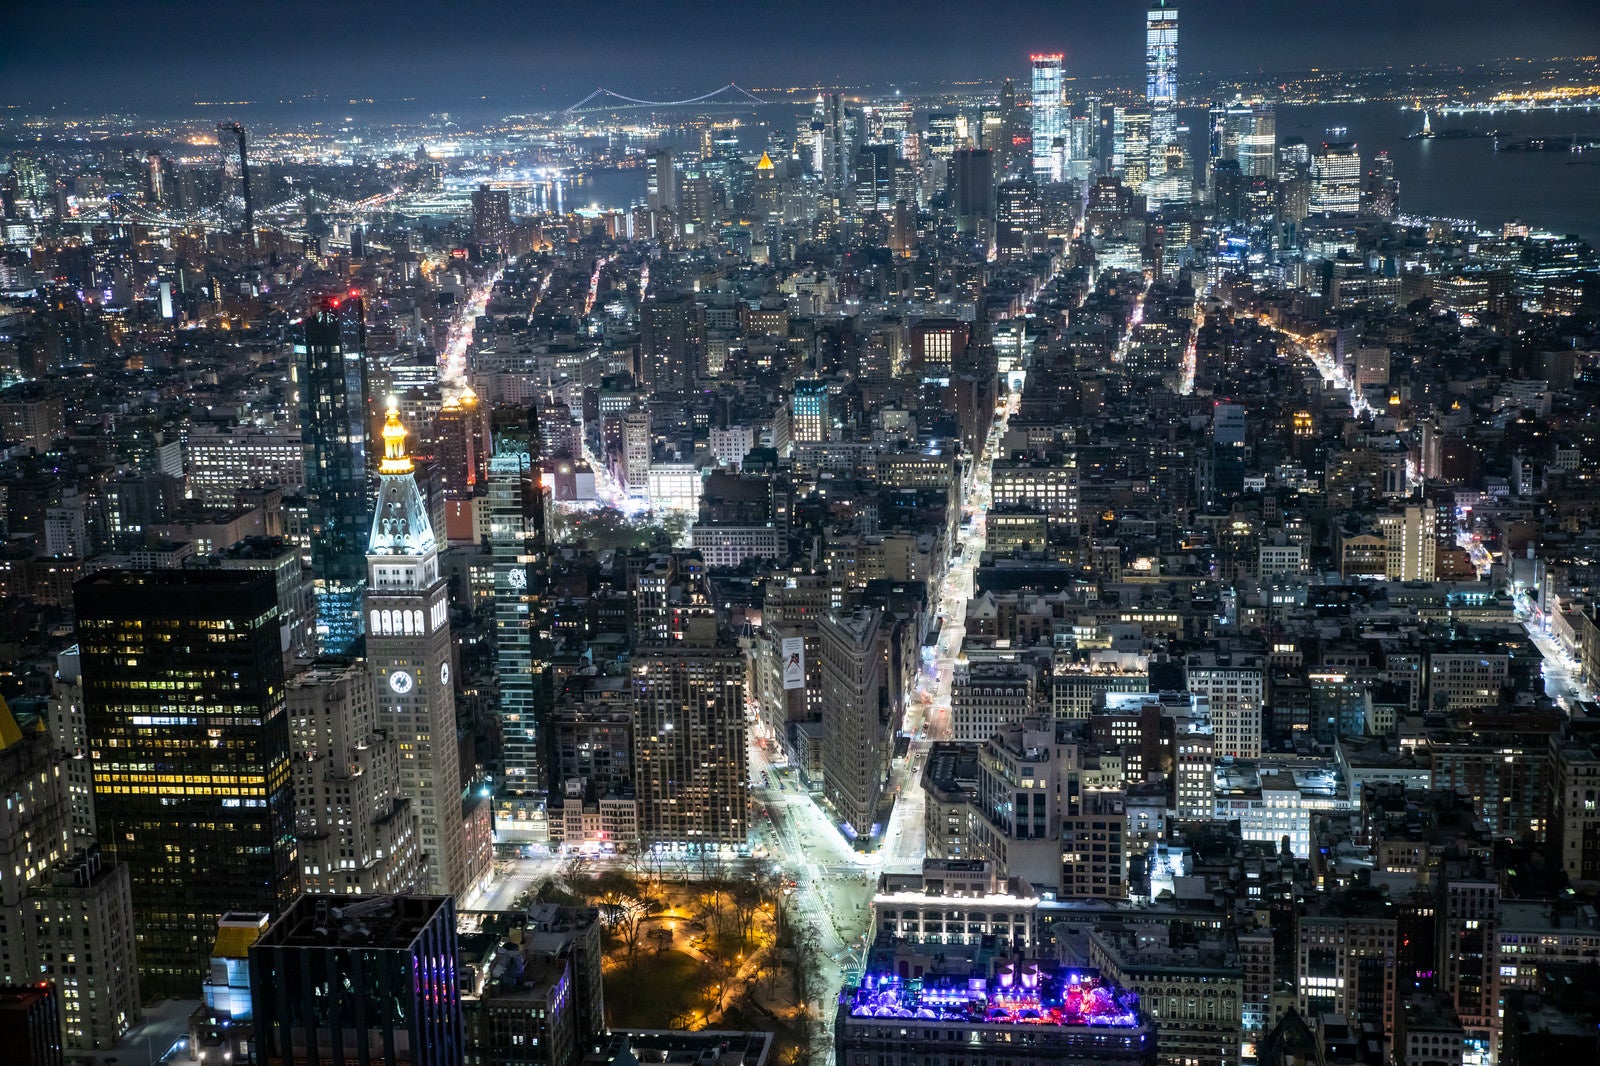 「エンパイアステートビル展望台から見た夜景（ニューヨーク）」の写真